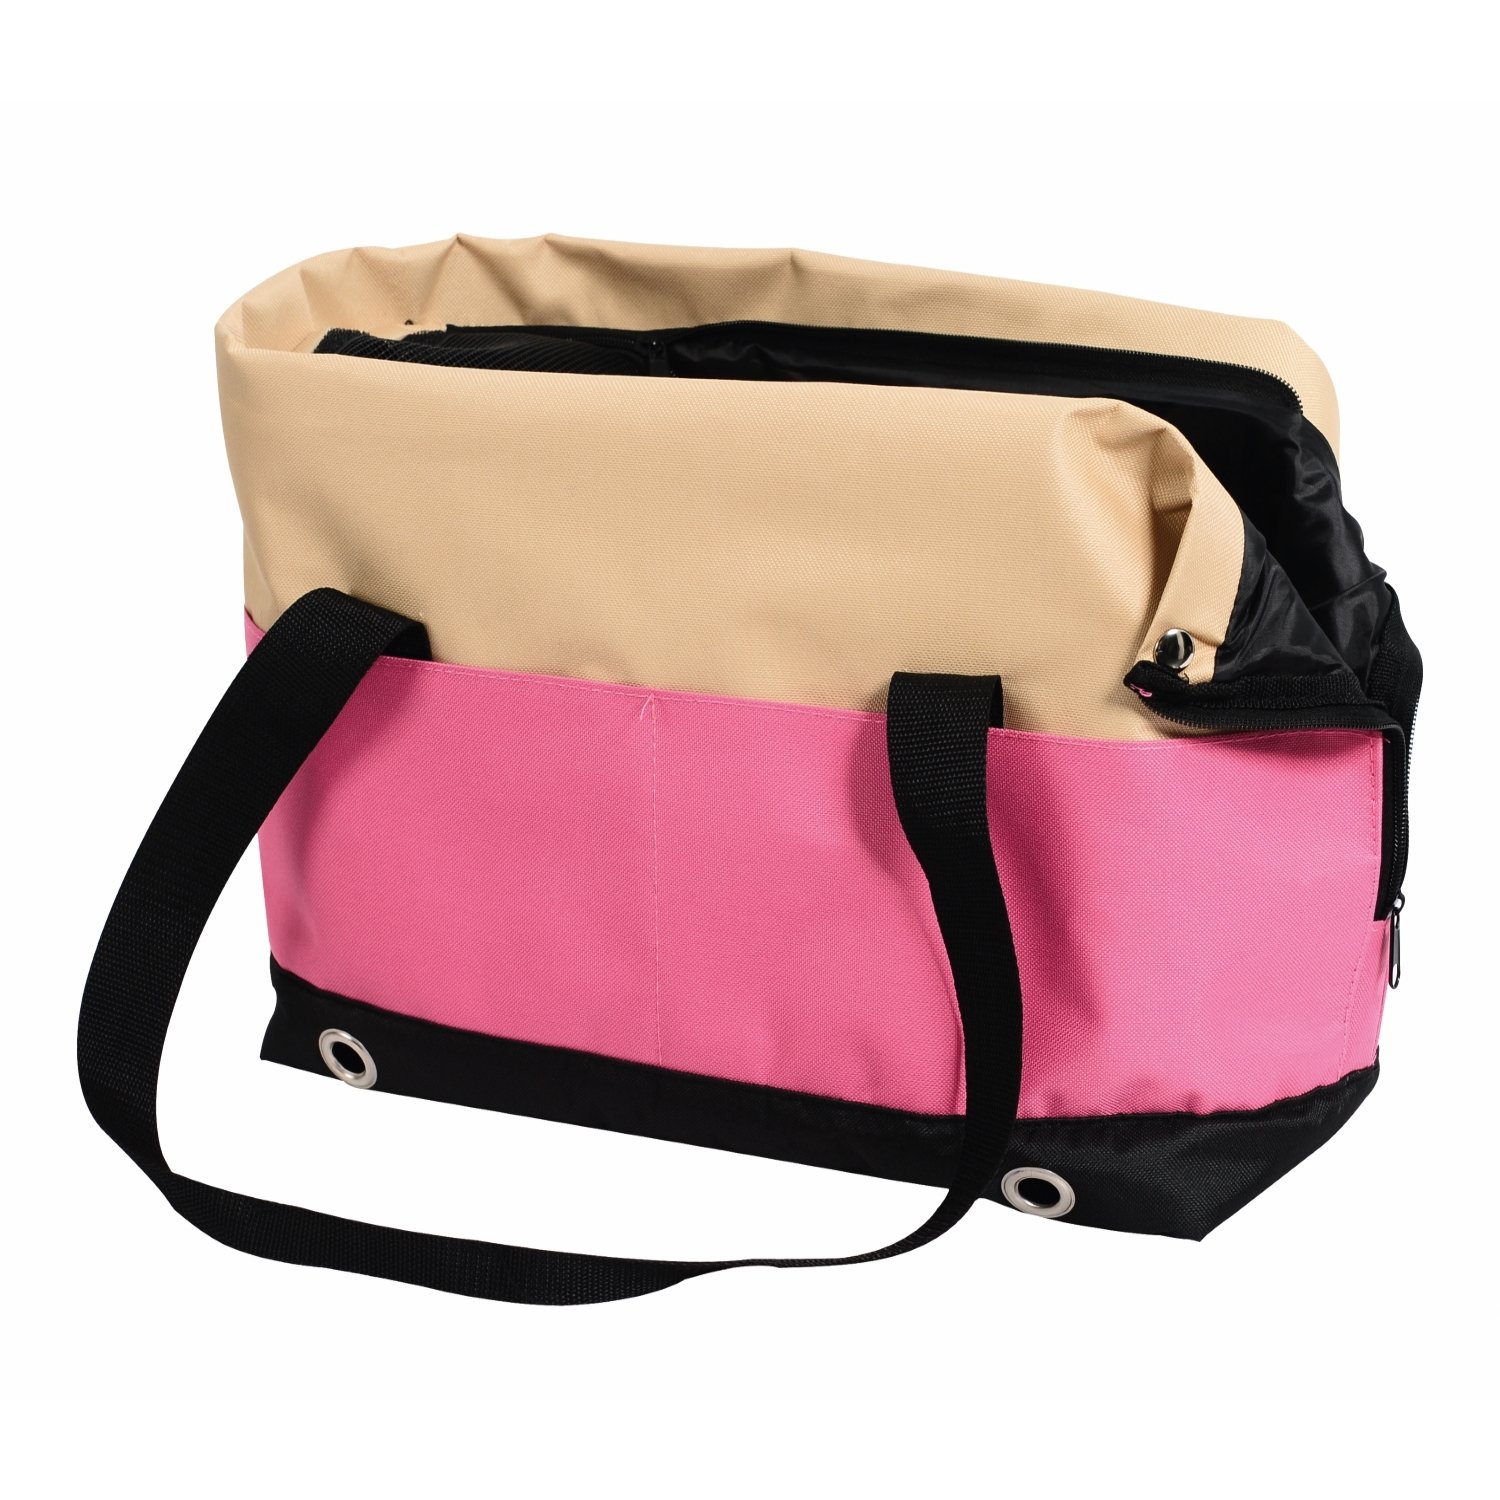 Переноска-сумка Nobby Salta малая Бежевая-Розовая - фото 1